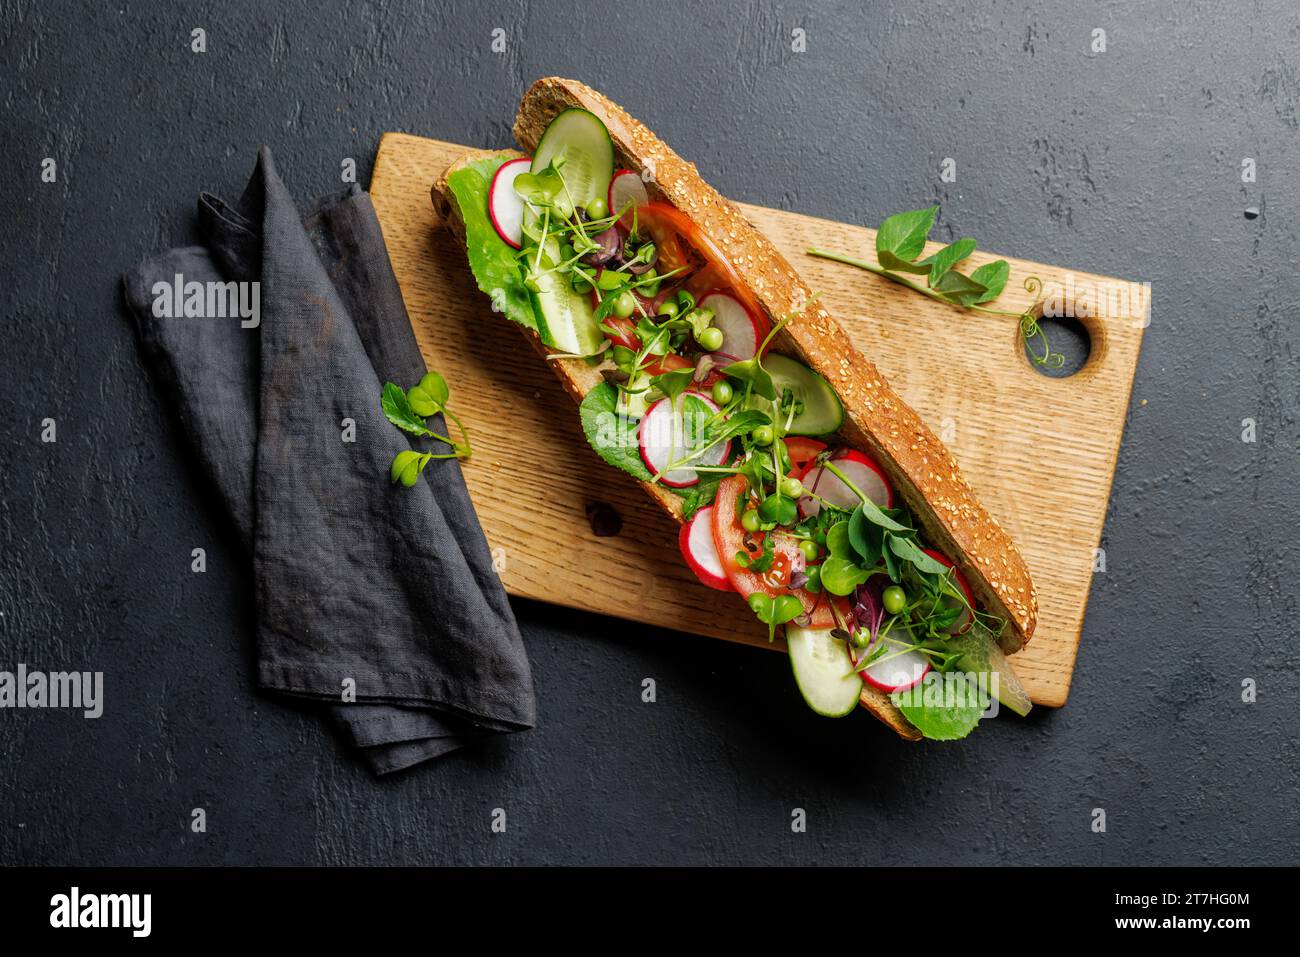 Köstliches vegetarisches Sandwich gefüllt mit einem frischen Baguette, gefüllt mit Geschmack und gesunden Zutaten Stockfoto